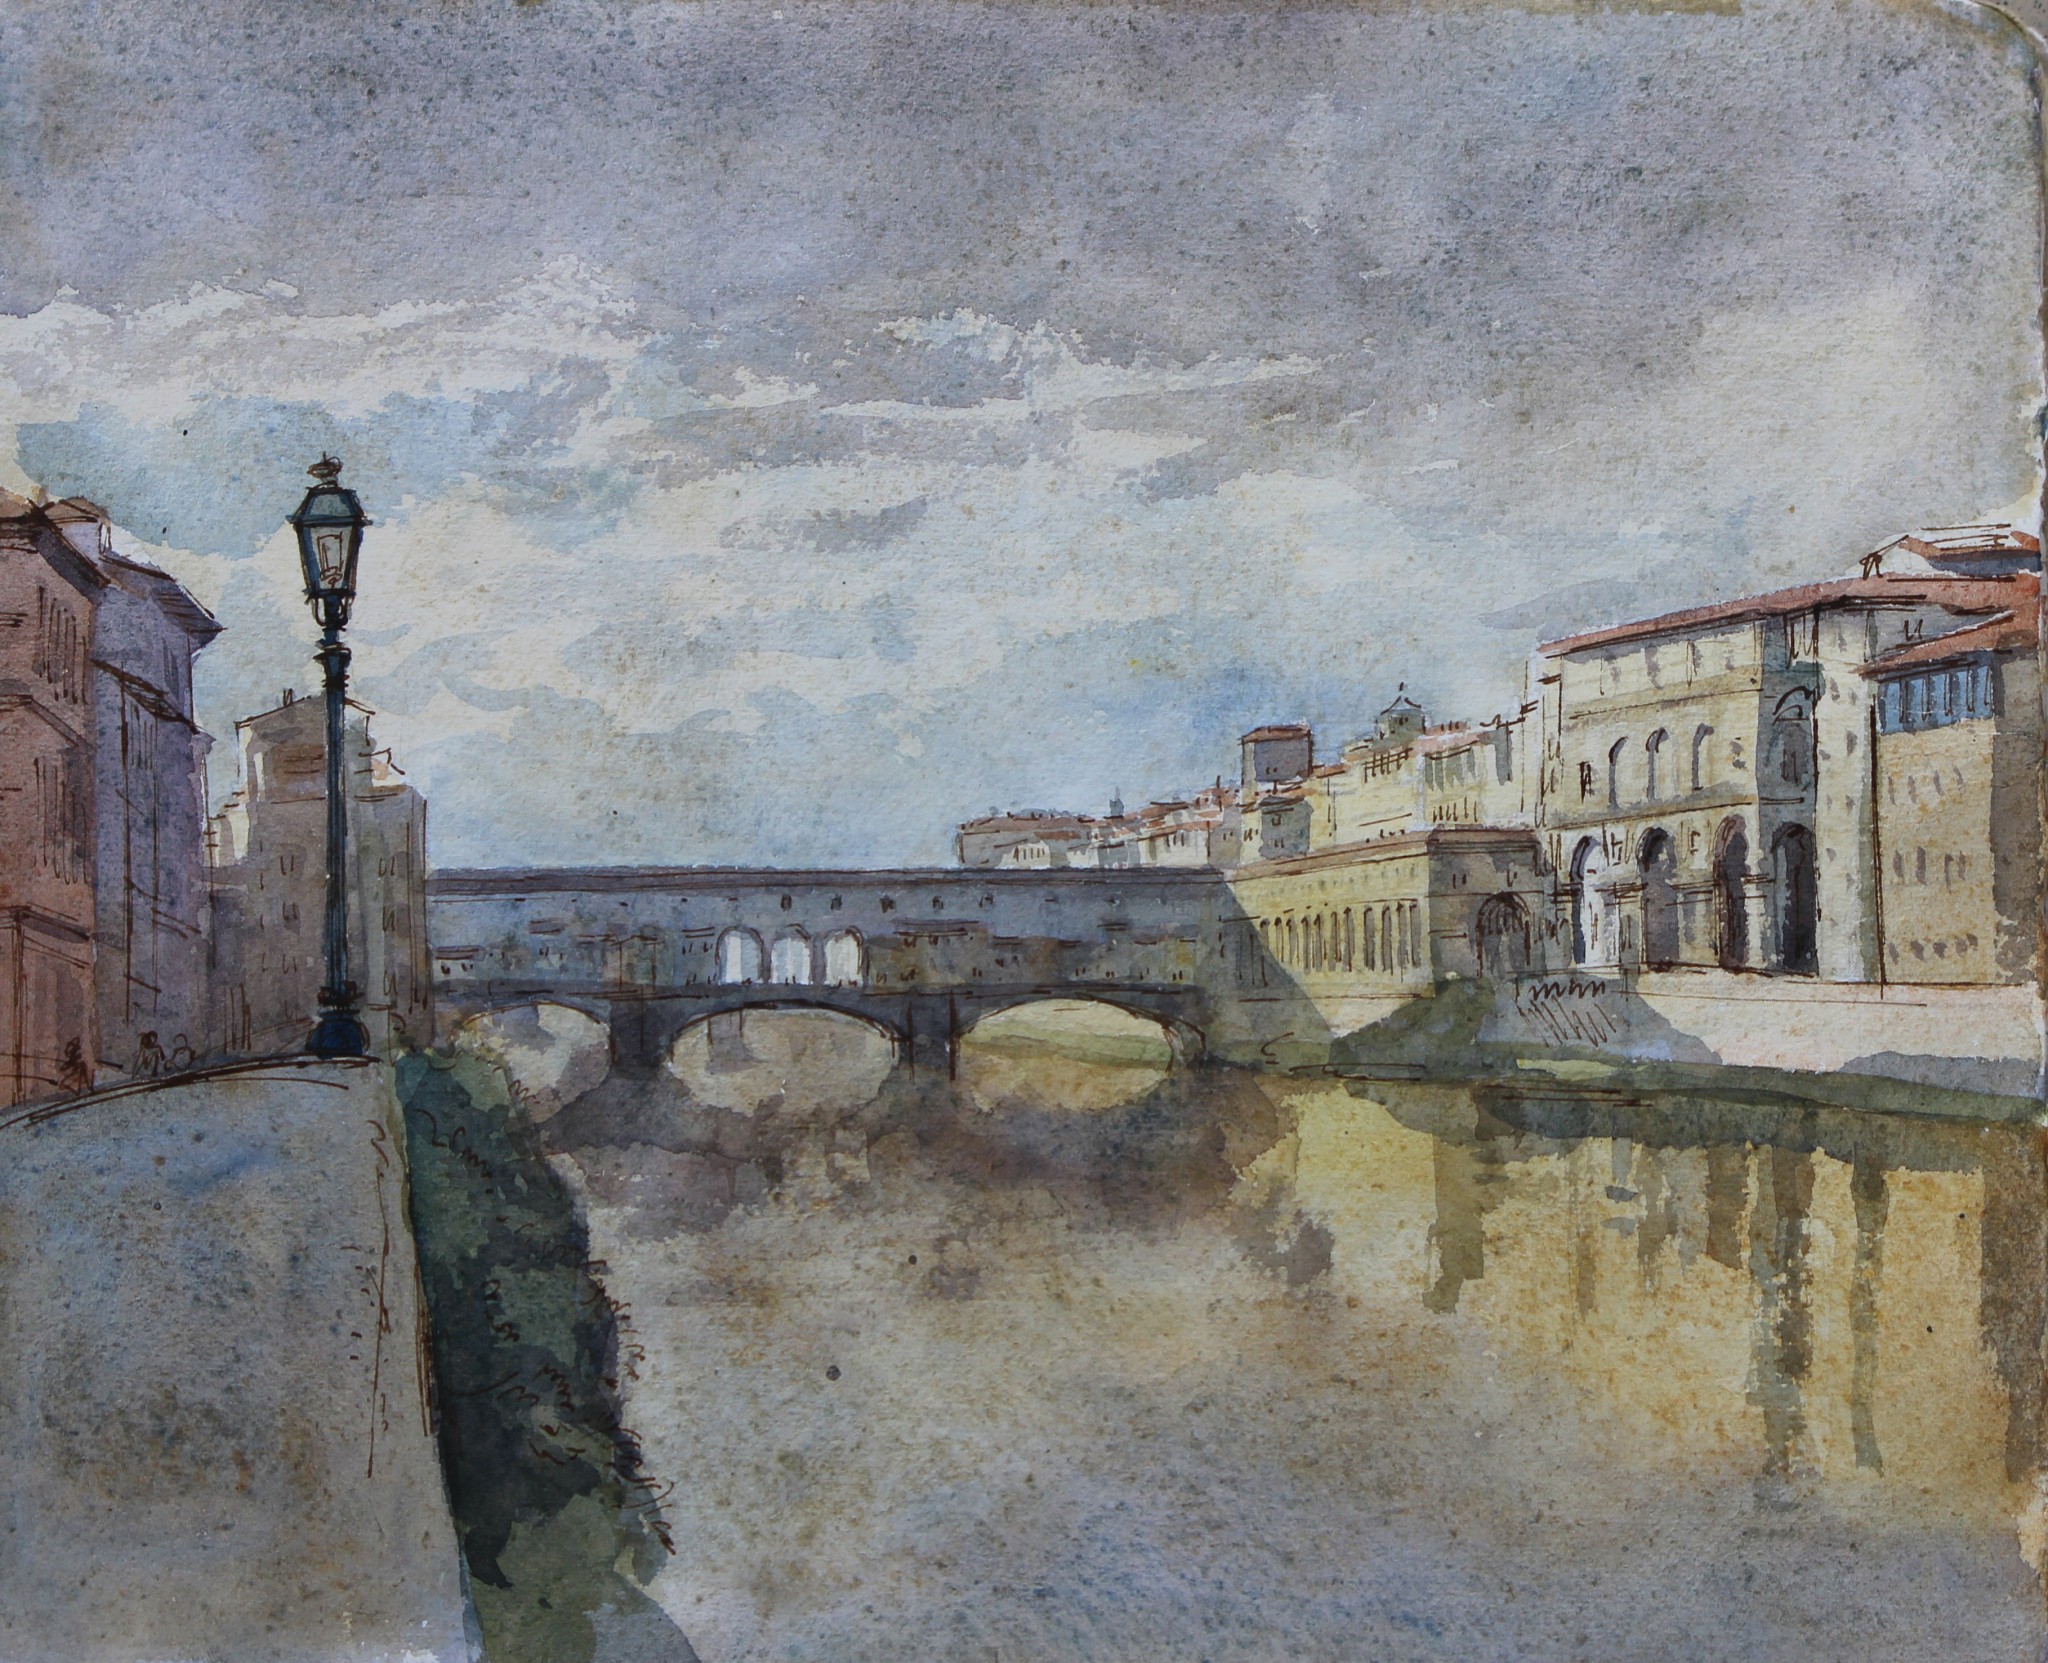 Ponte Vecchio2     David Henderson, The Ponte Vecchio, Ink and watercolour 27 x 32 cm, 2014